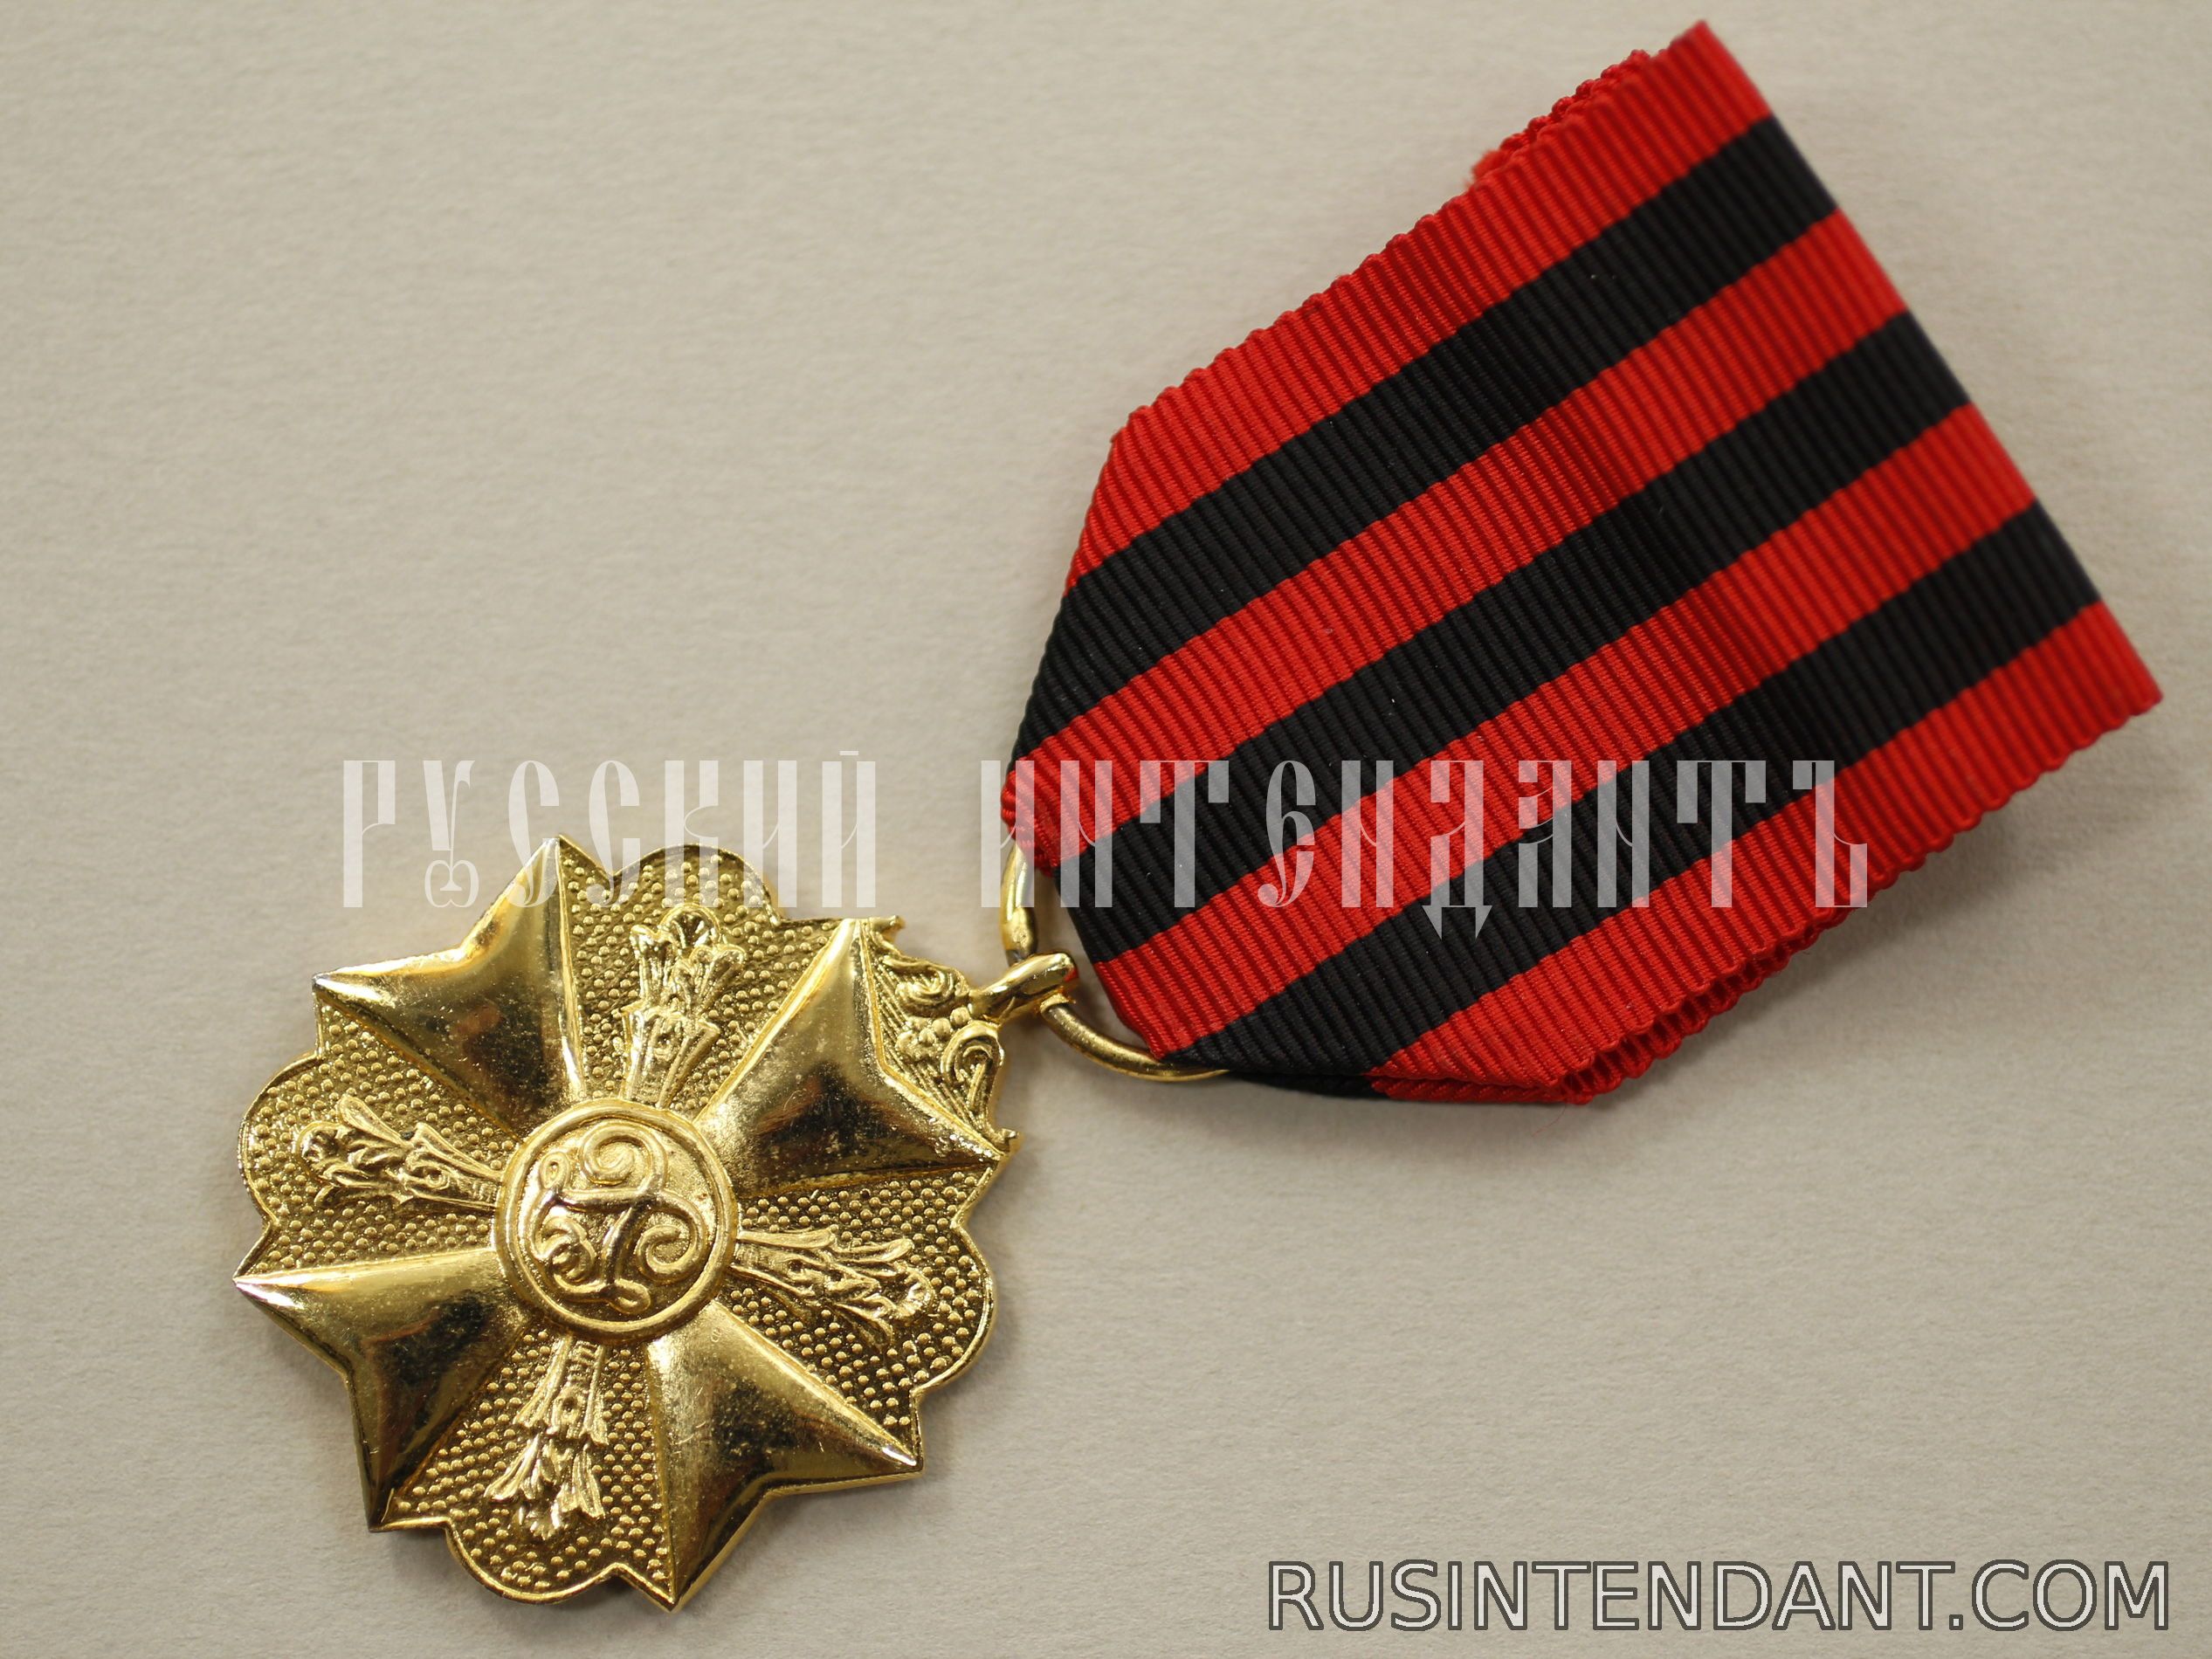 Фото 3: Золотая медаль Гражданского знака отличия 